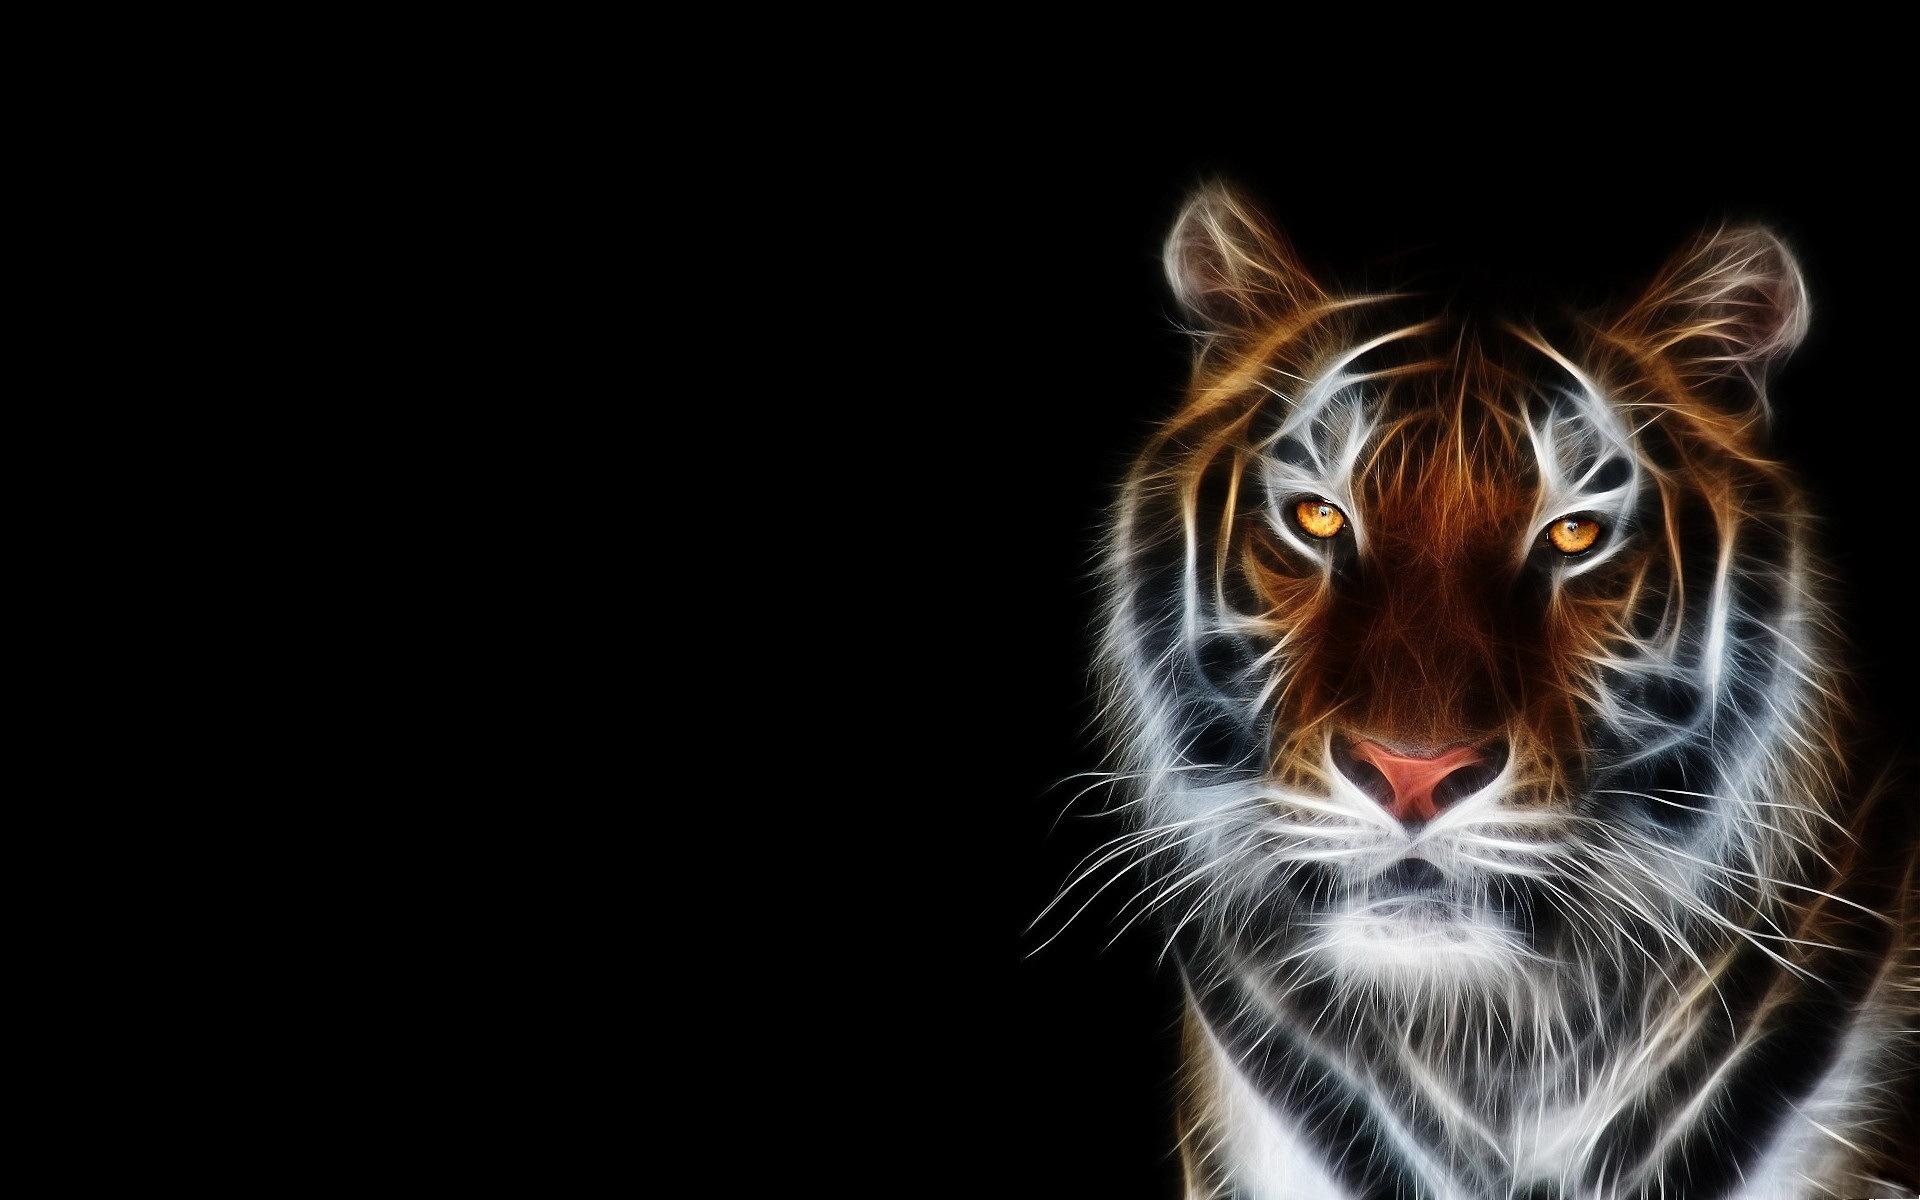 digital tiger wallpaper1600x900分辨率查看